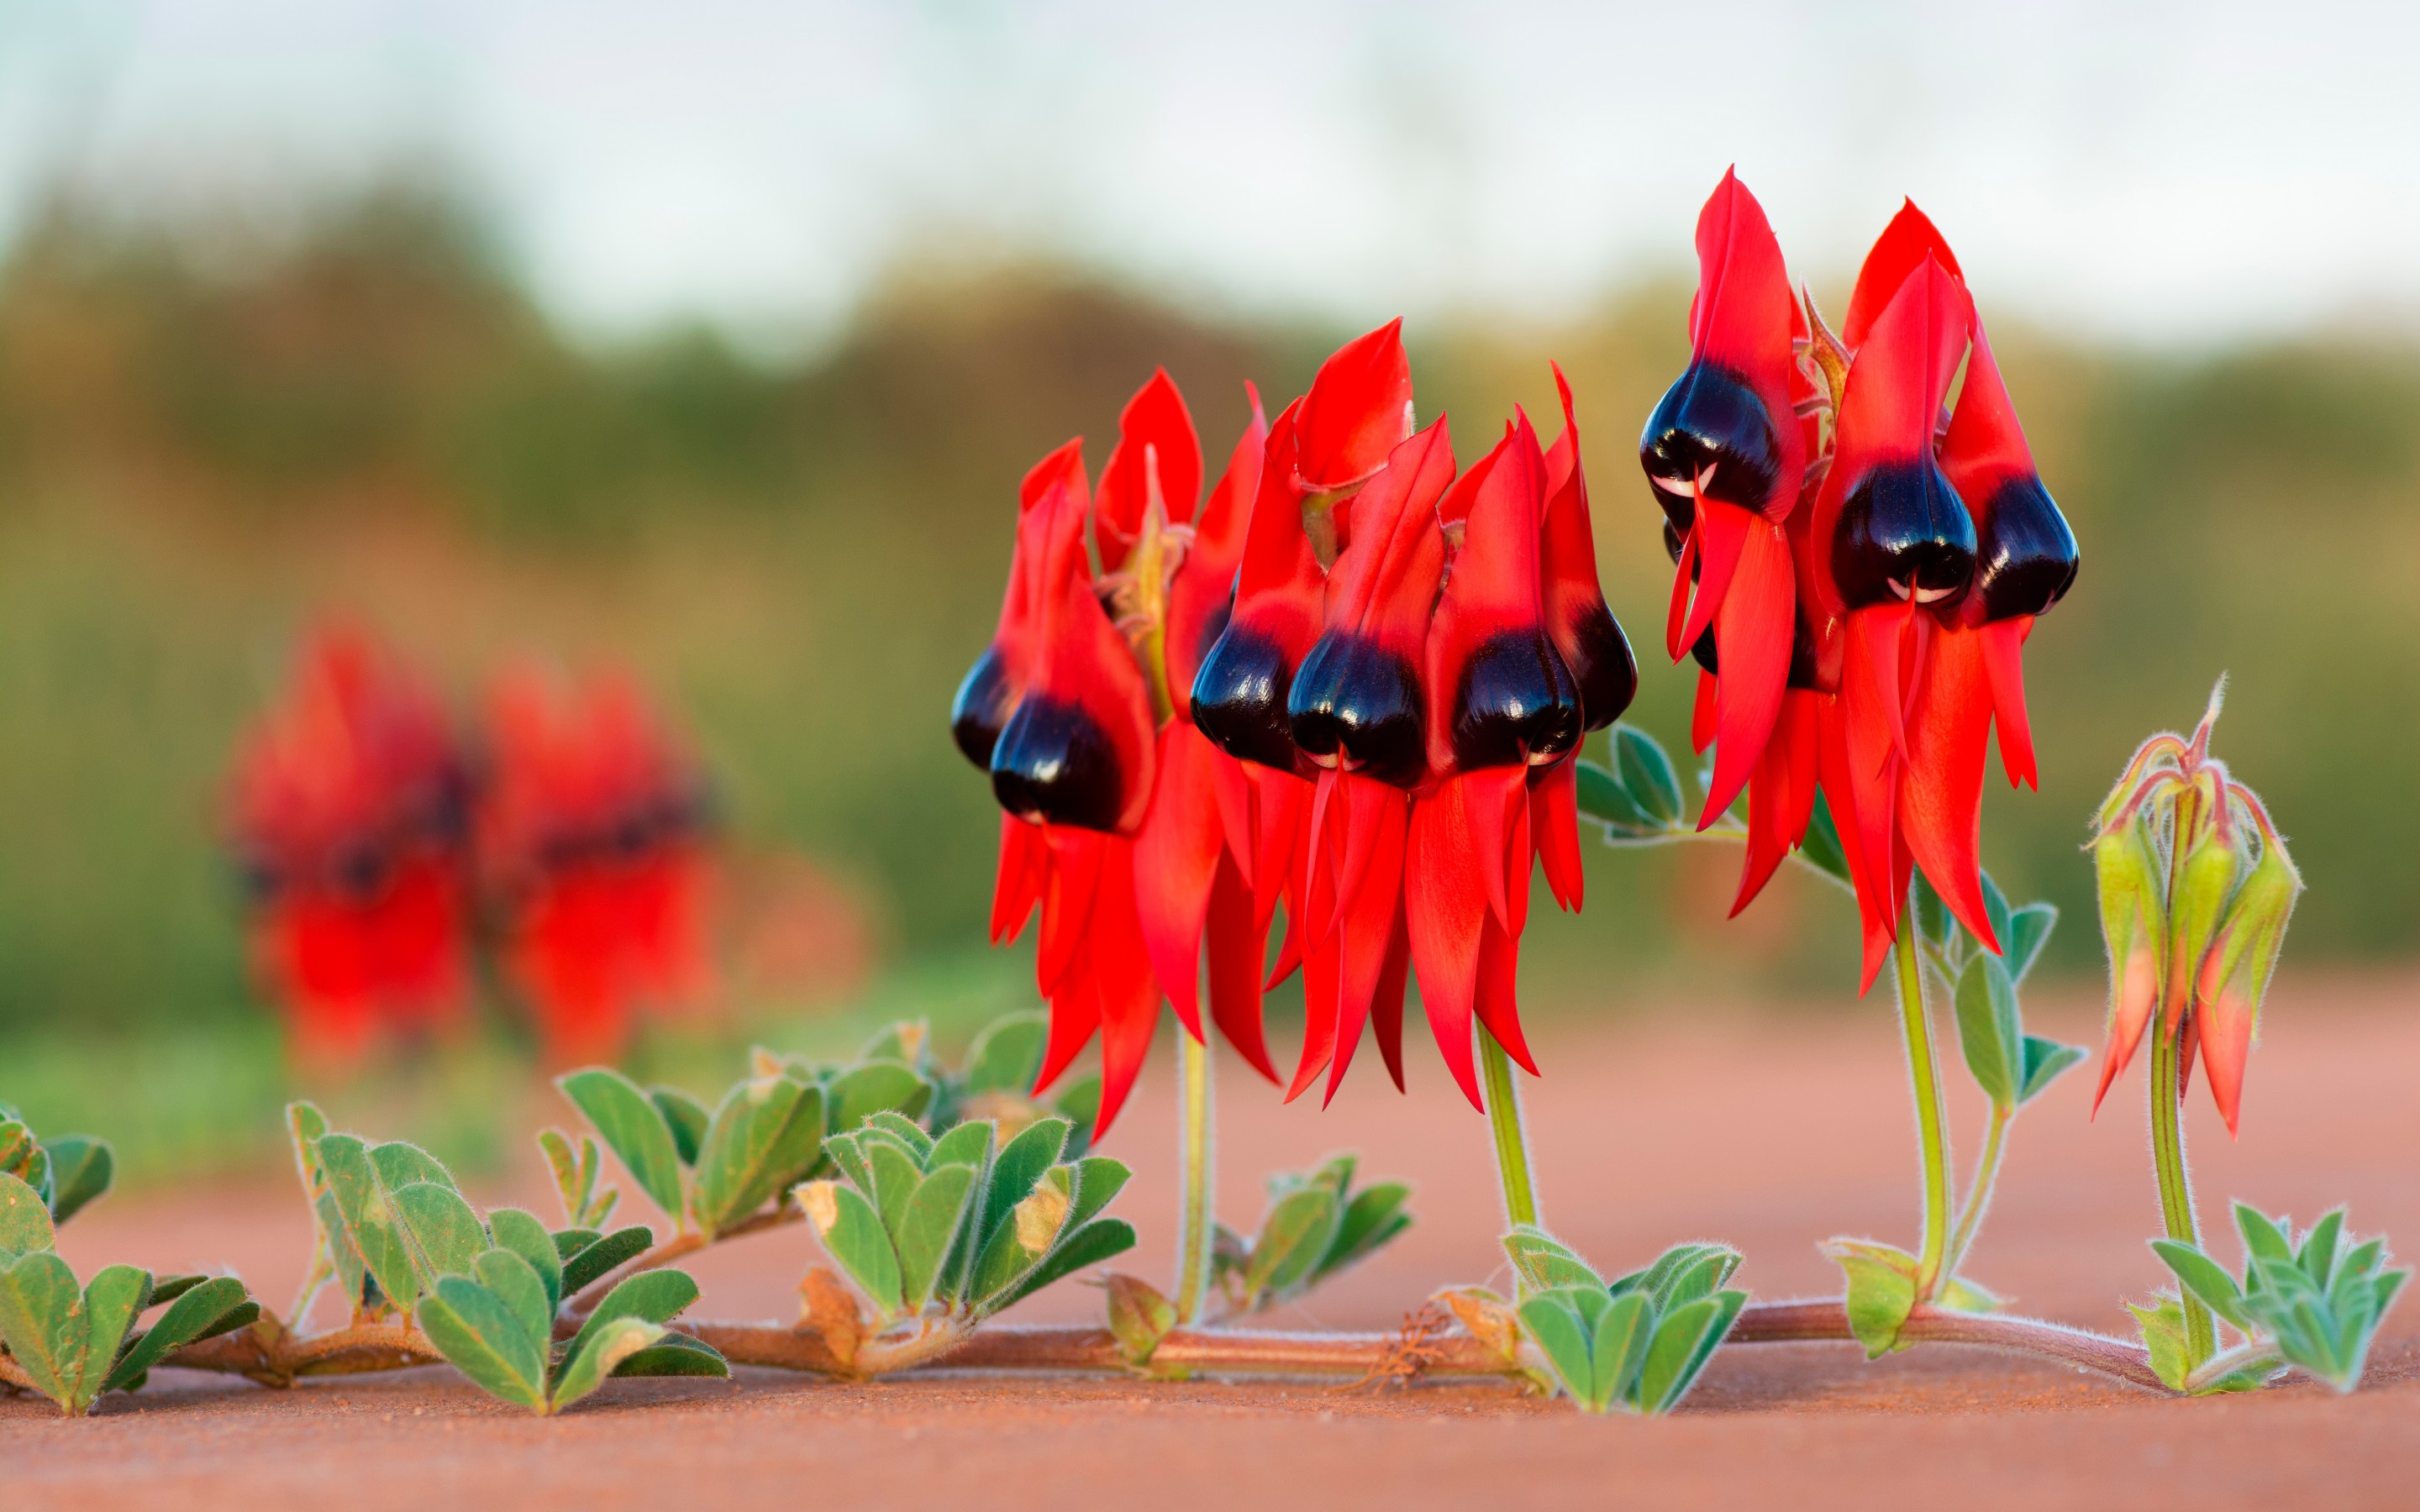 Sturt's Desert Pea Is The South Australian Floral Emblem by Andrew Alderson